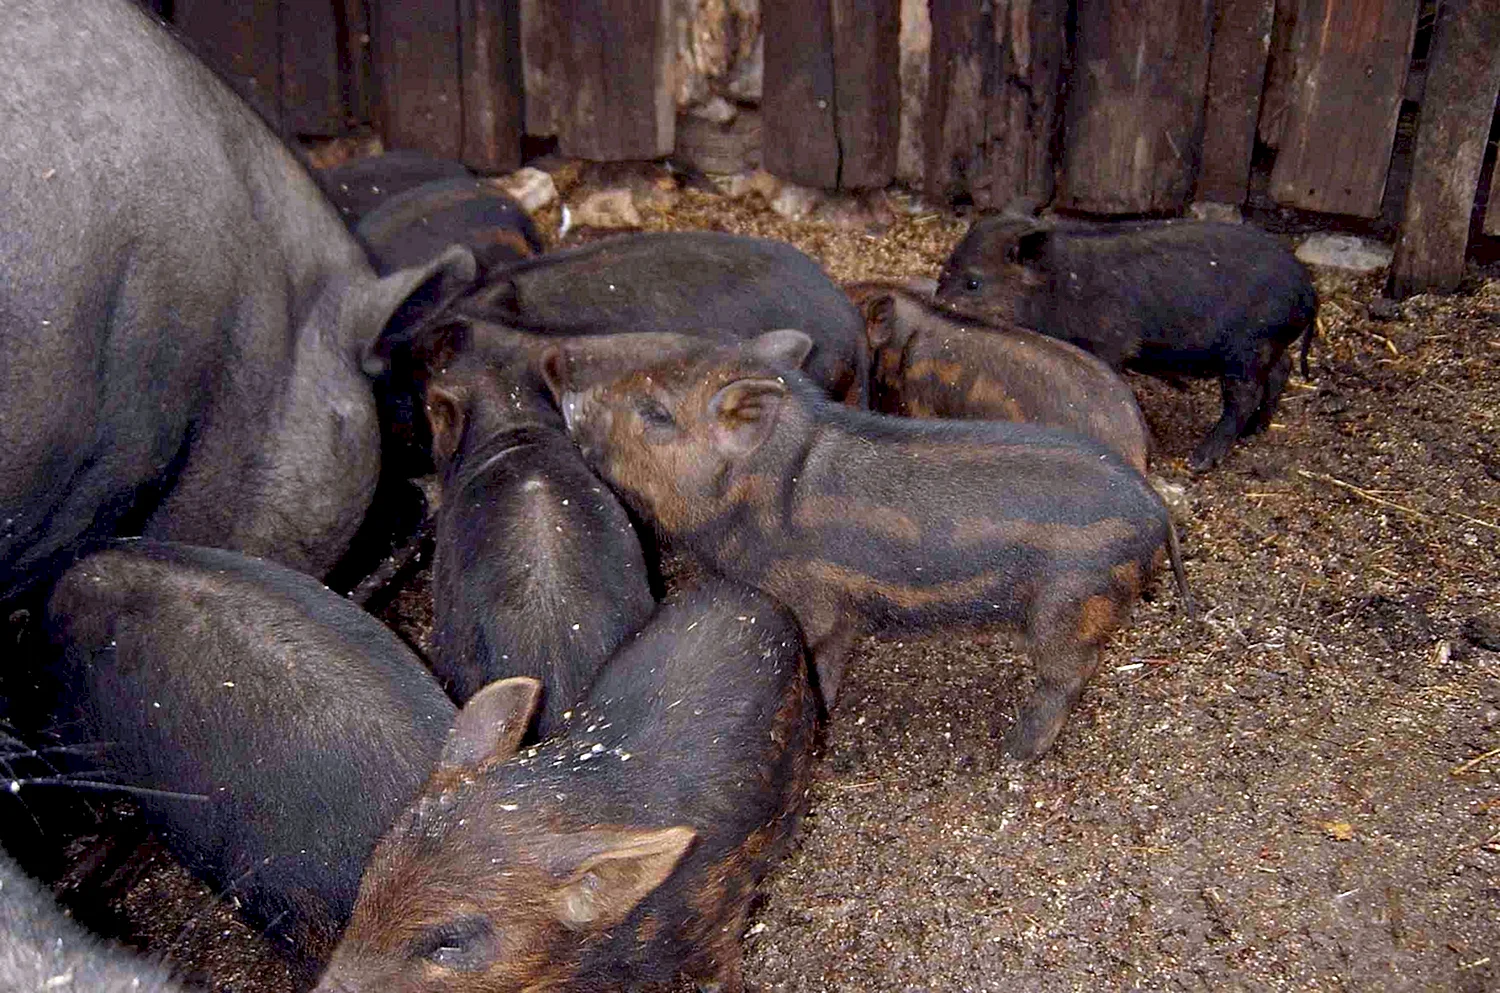 Свиньи породы мангал